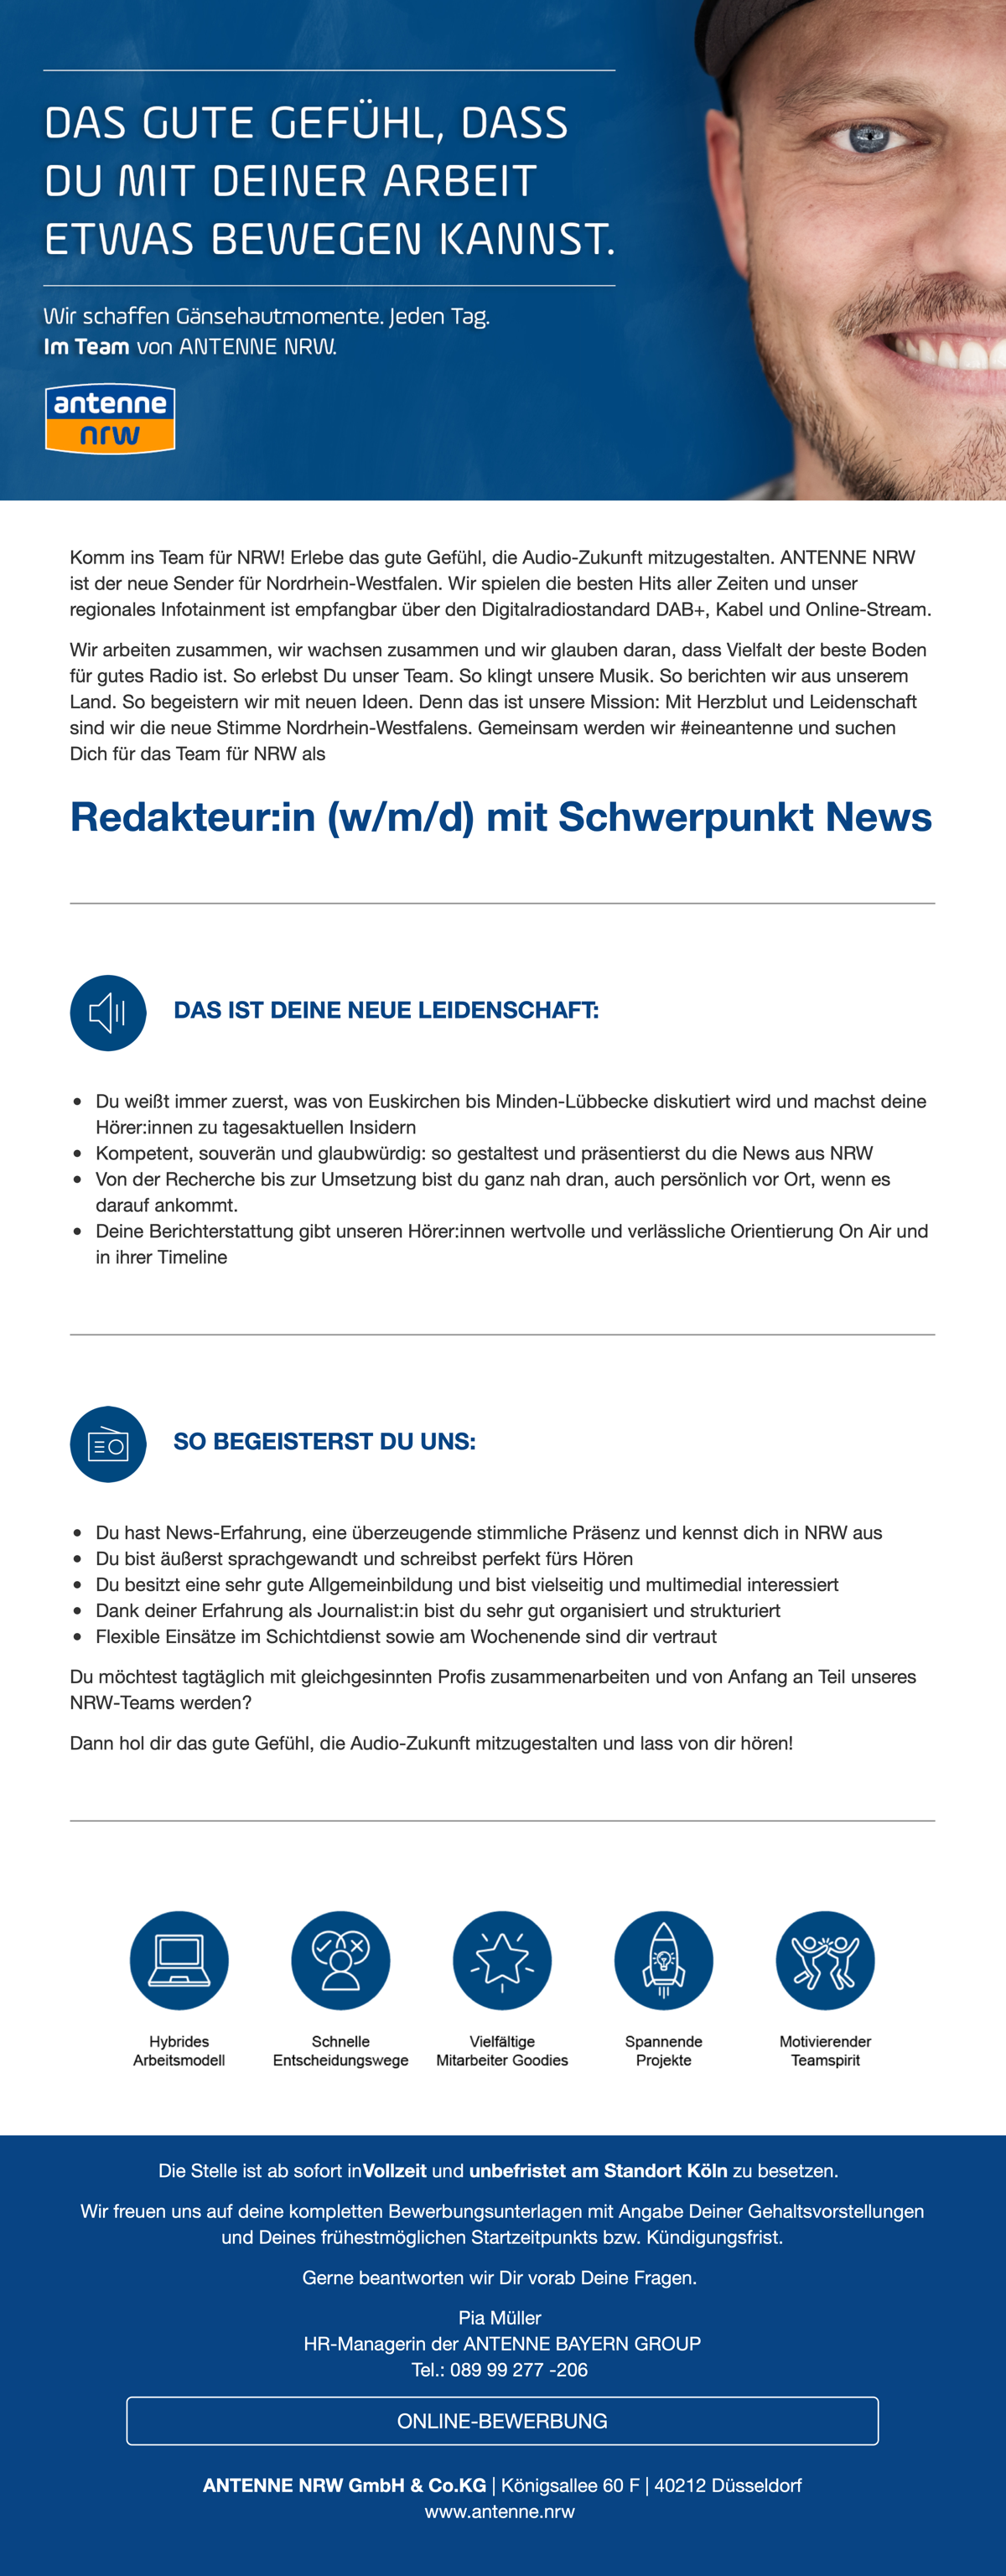 ANTENNE NRW sucht Redakteur:in (w/m/d) mit Schwerpunkt News